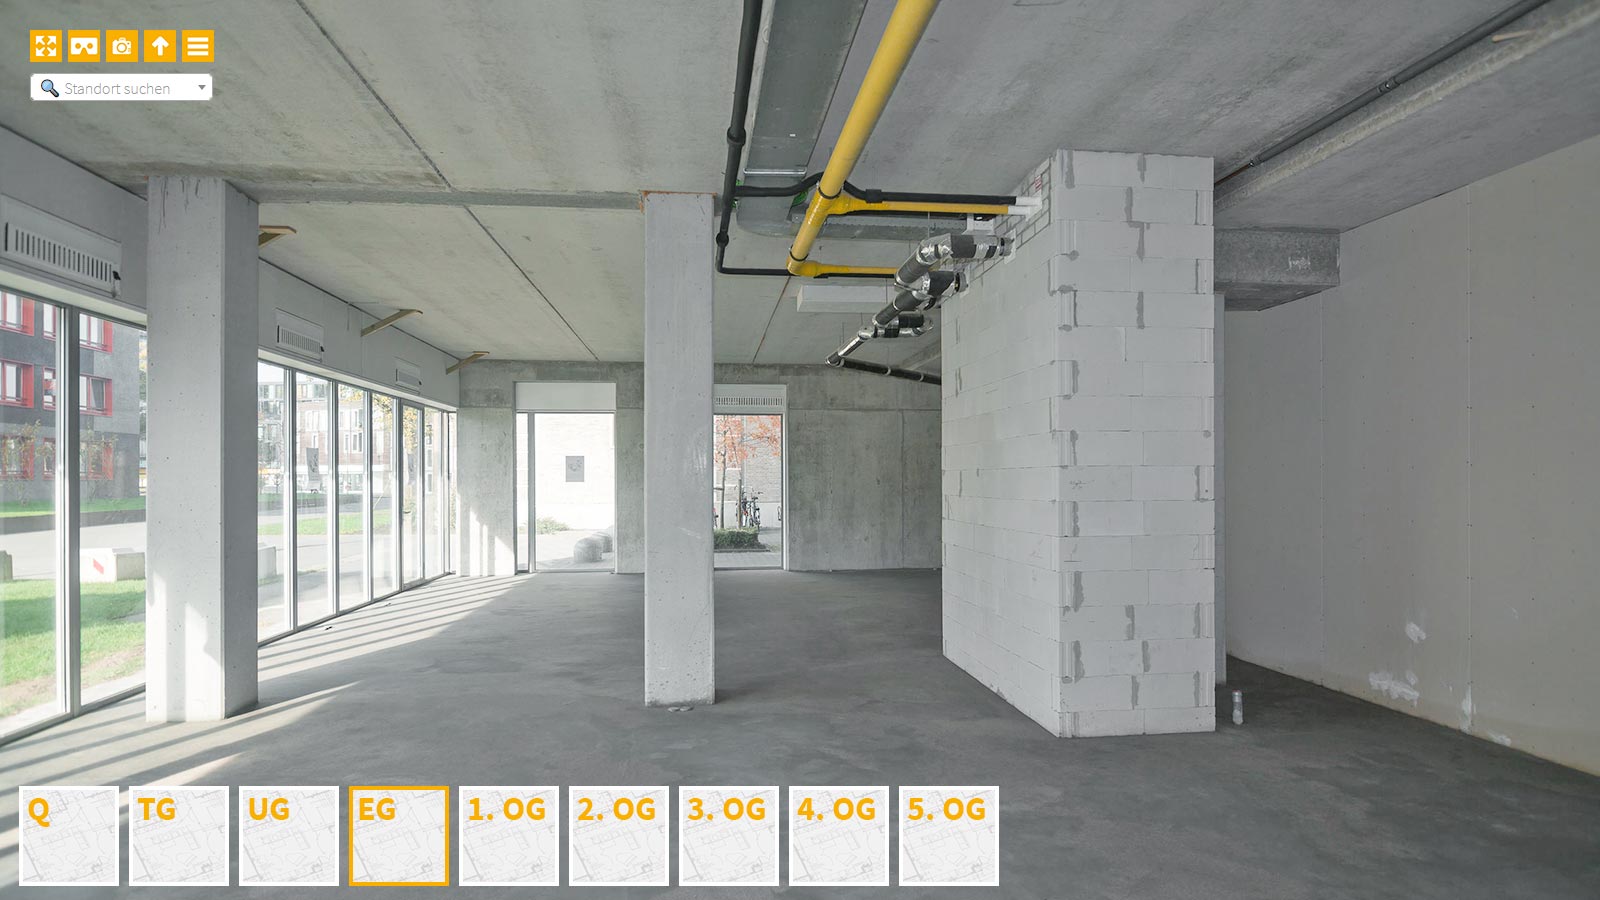 Baudokumentation 360 Grad bei gestörten Projekten in 


	


	


	


	


	


	


	


	


	


	Essen









, Bilddokumentation als virtueller Rundgang